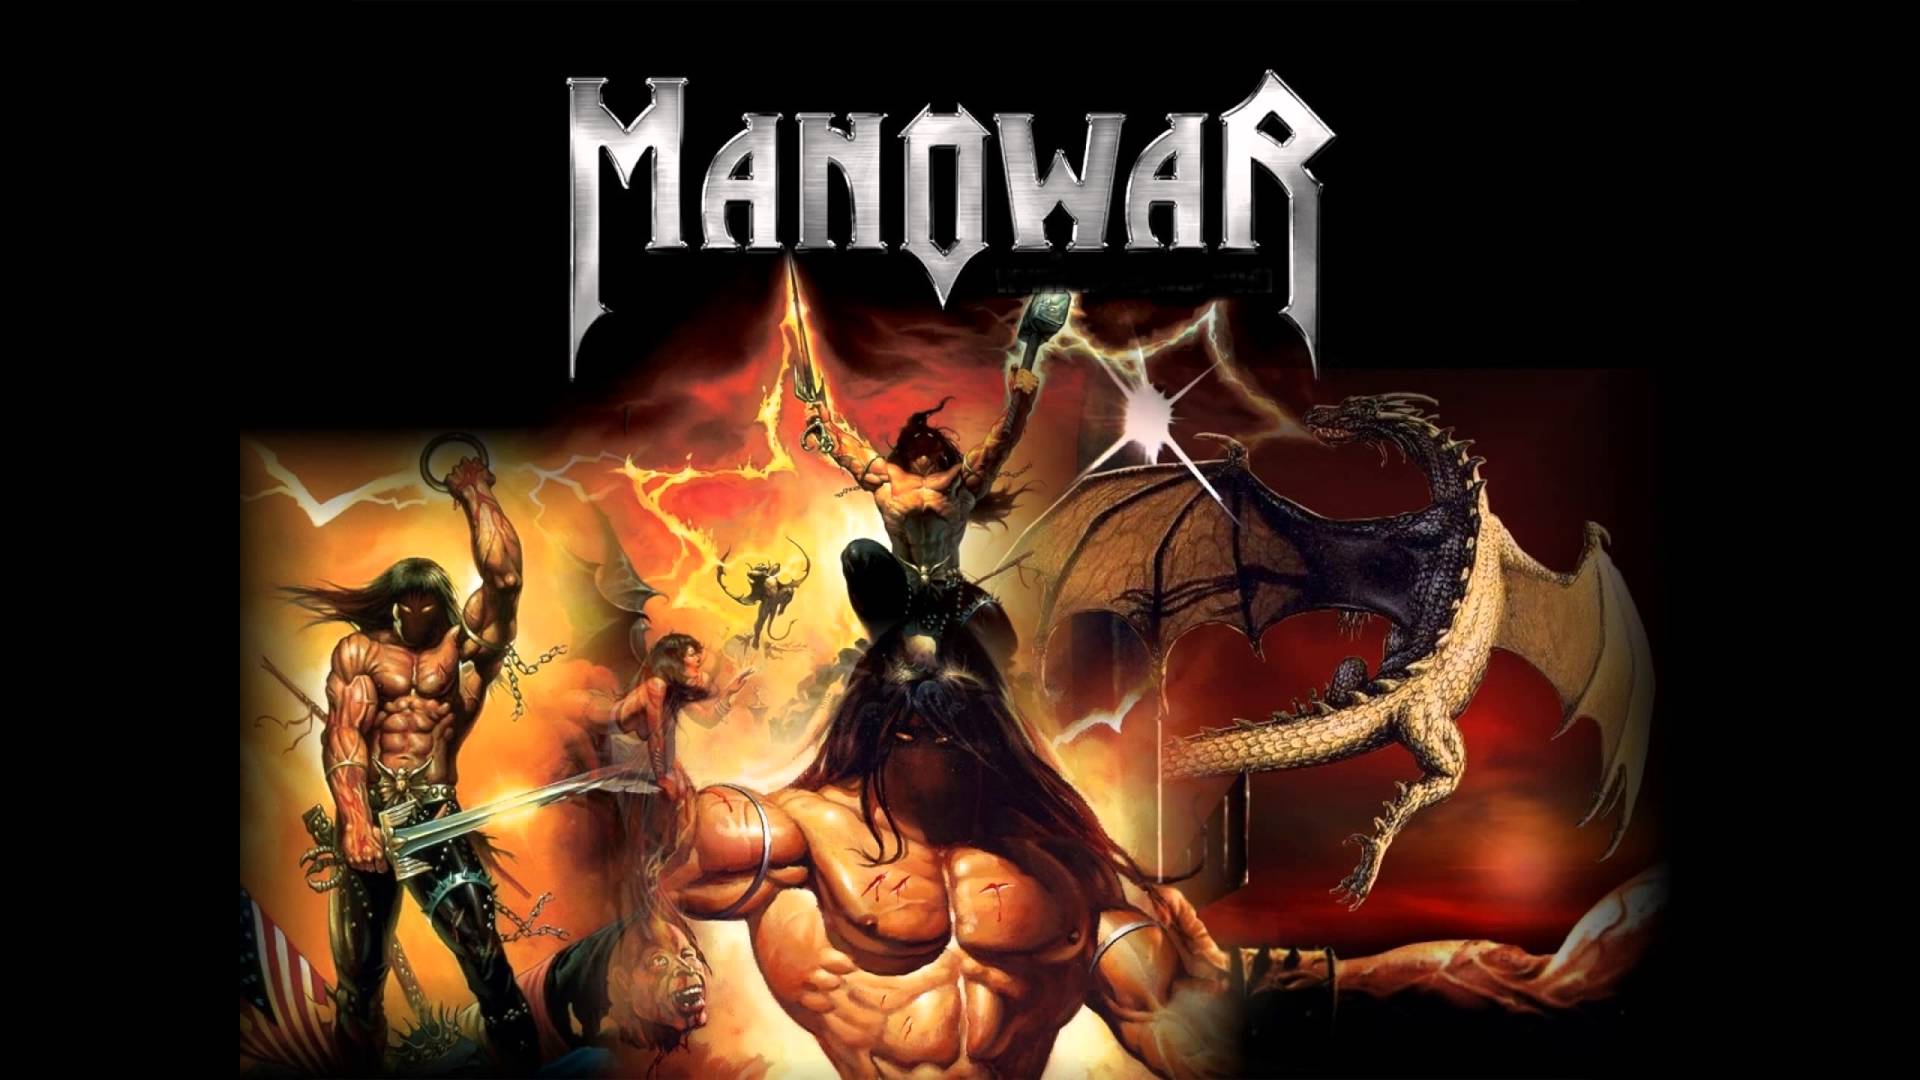 Manowar united. Группа Manowar иллюстрации. Мановар постеры. Manowar 2002. Мановар обложки.